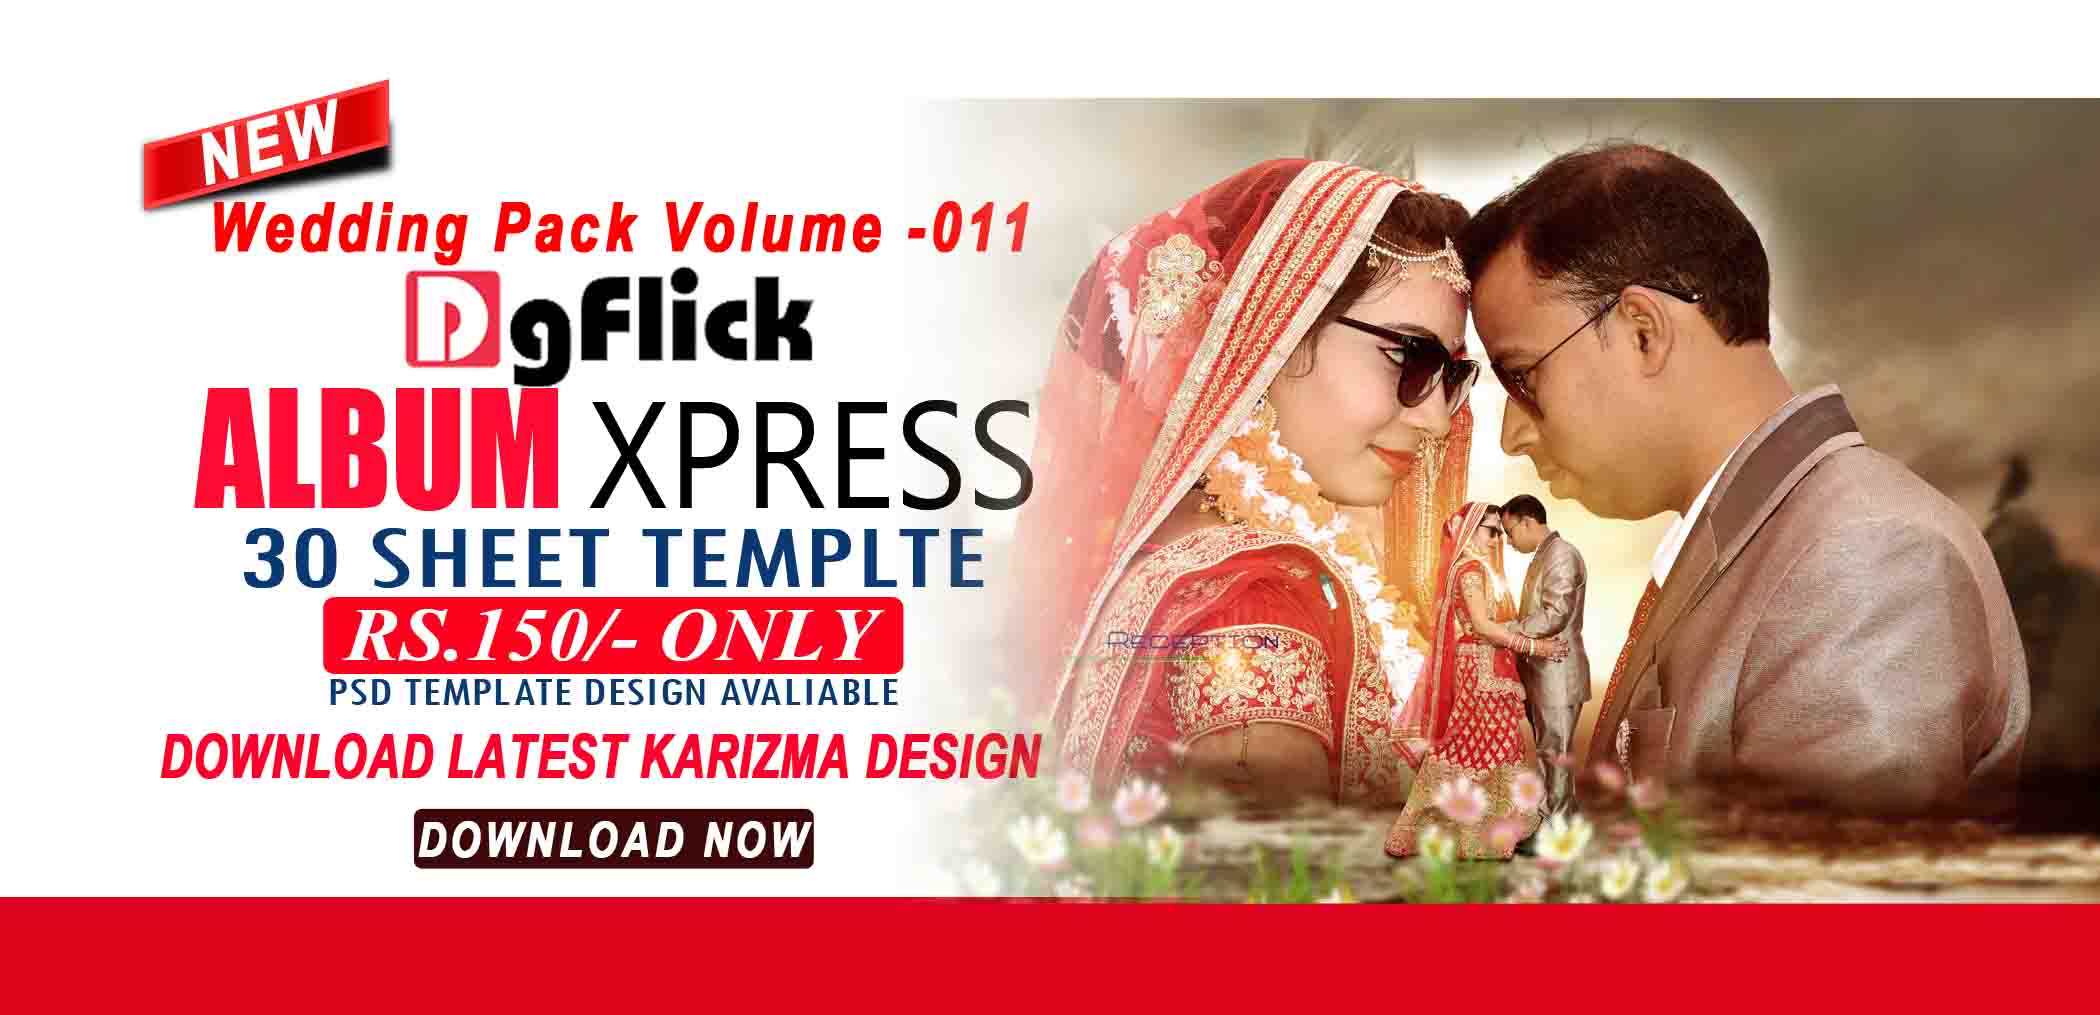 dgflick album xpress pro 13.5 templates free download